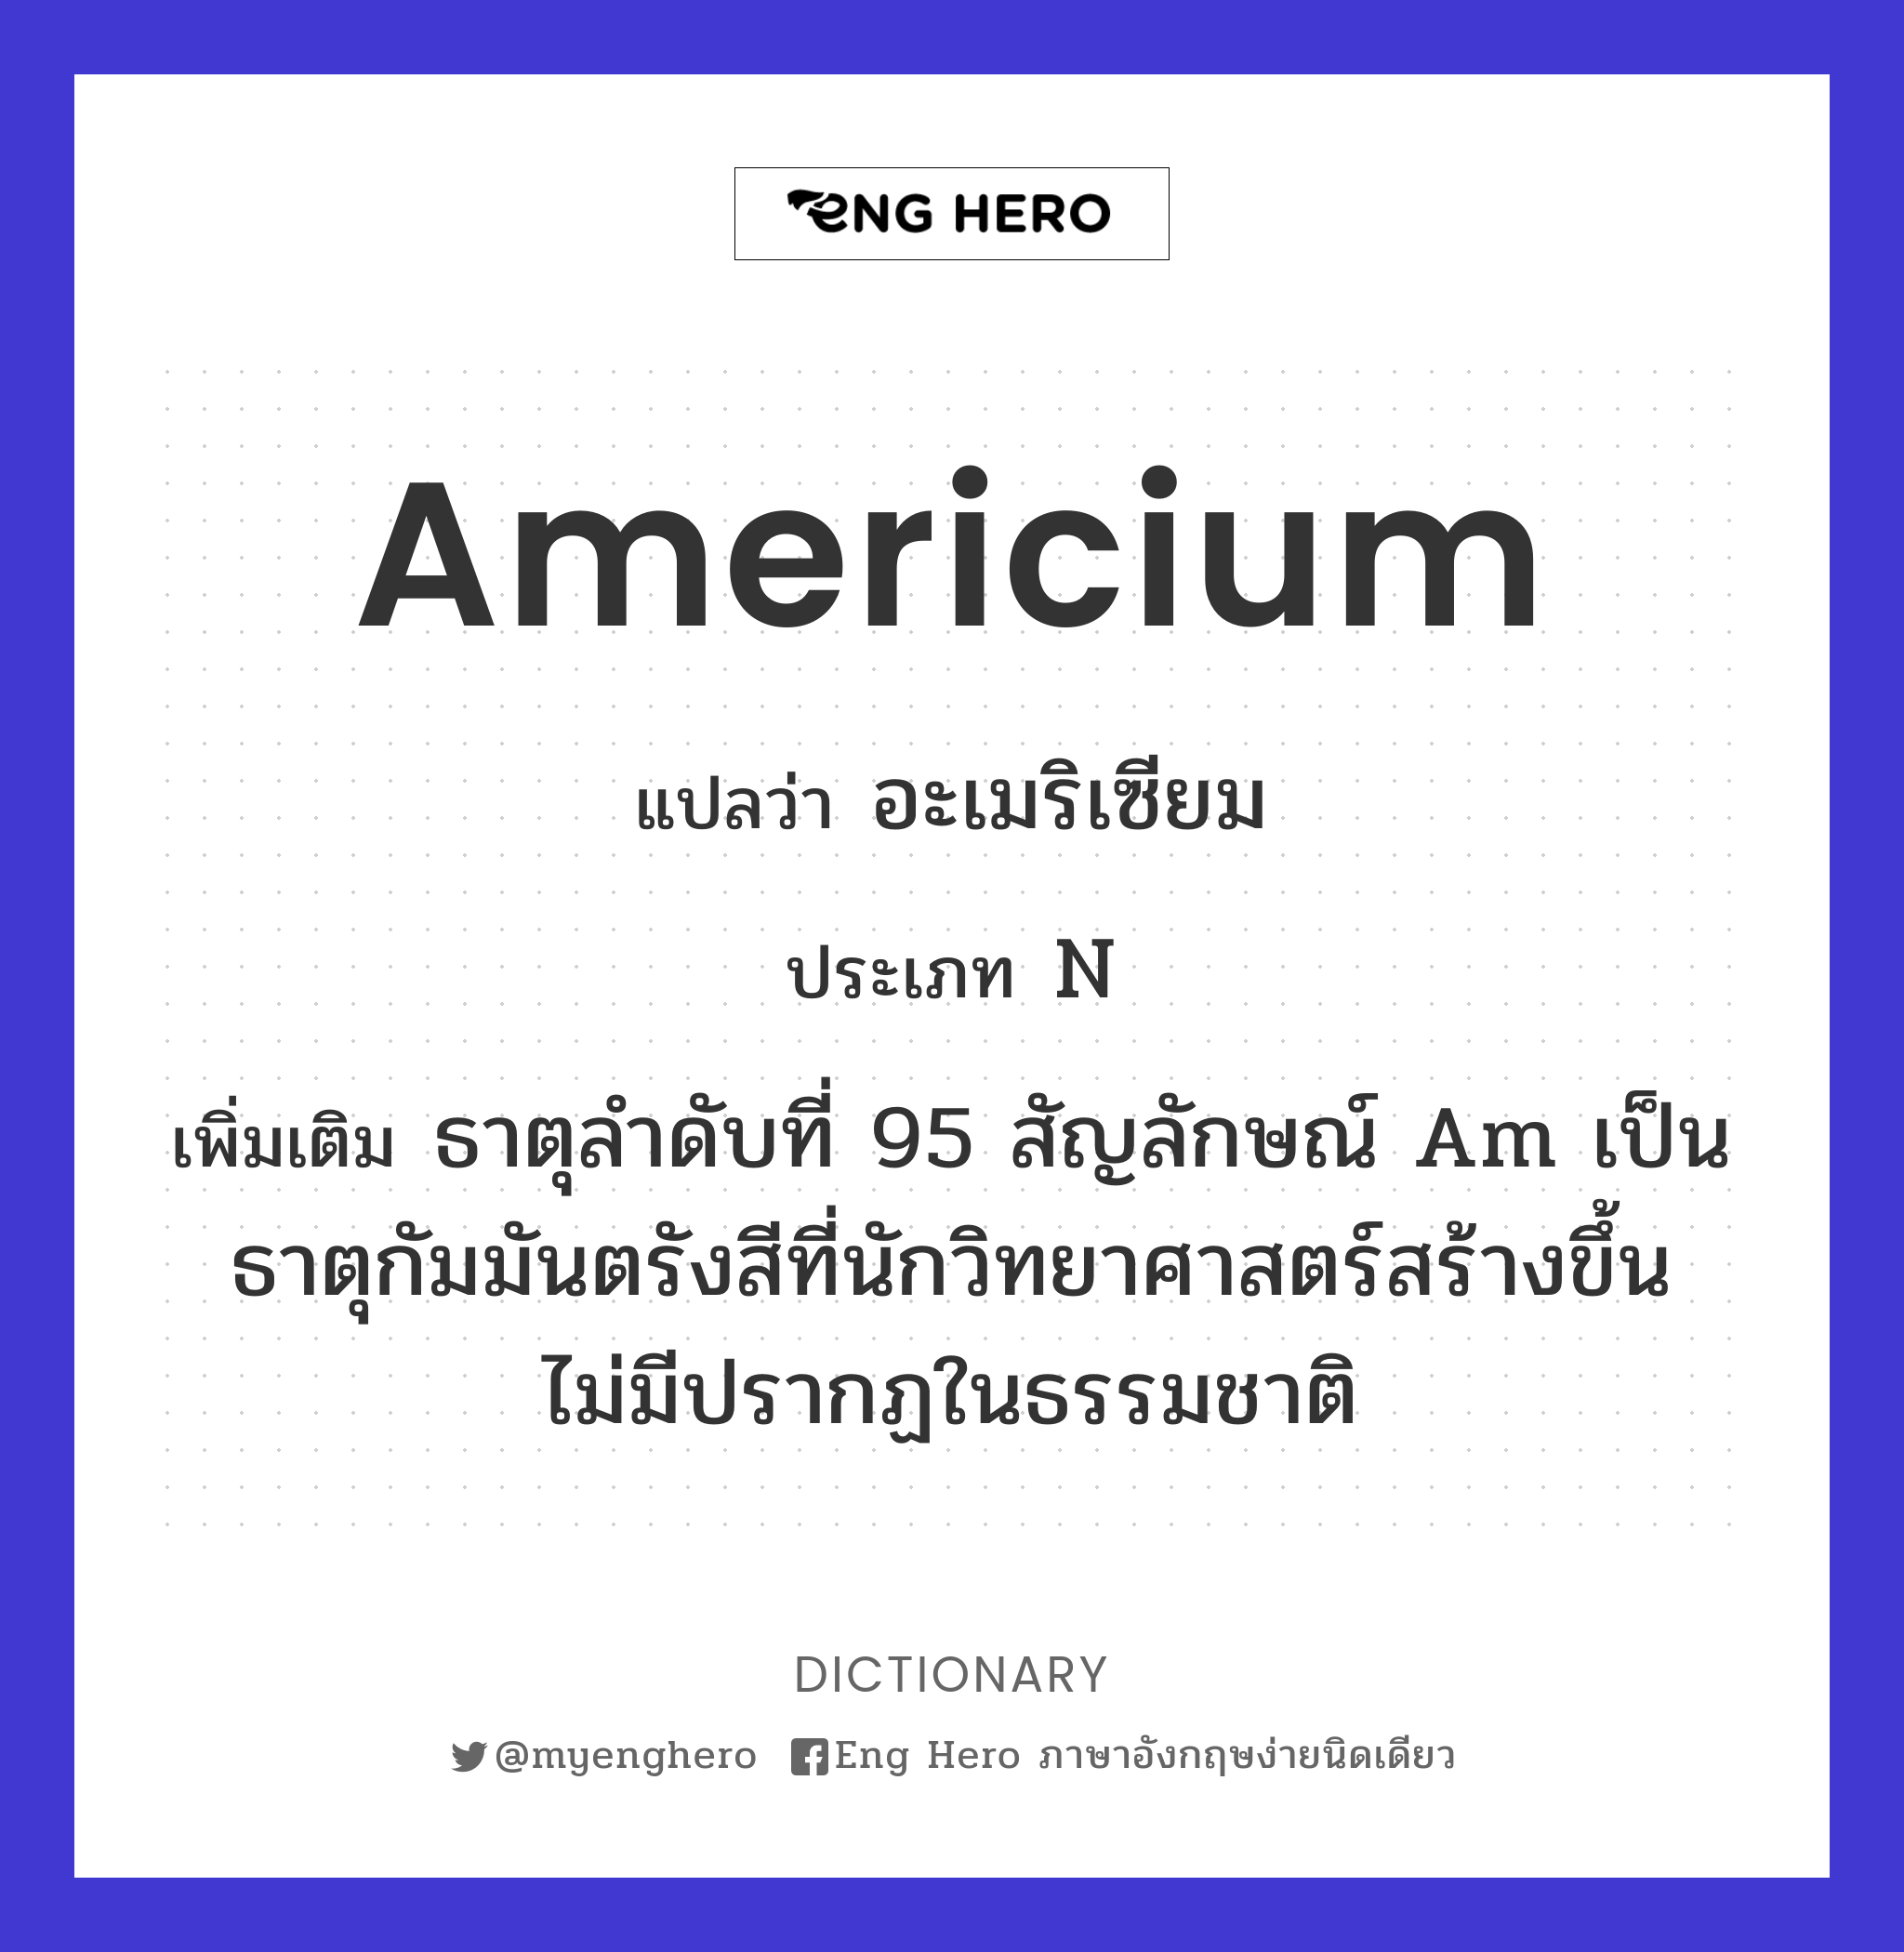 americium